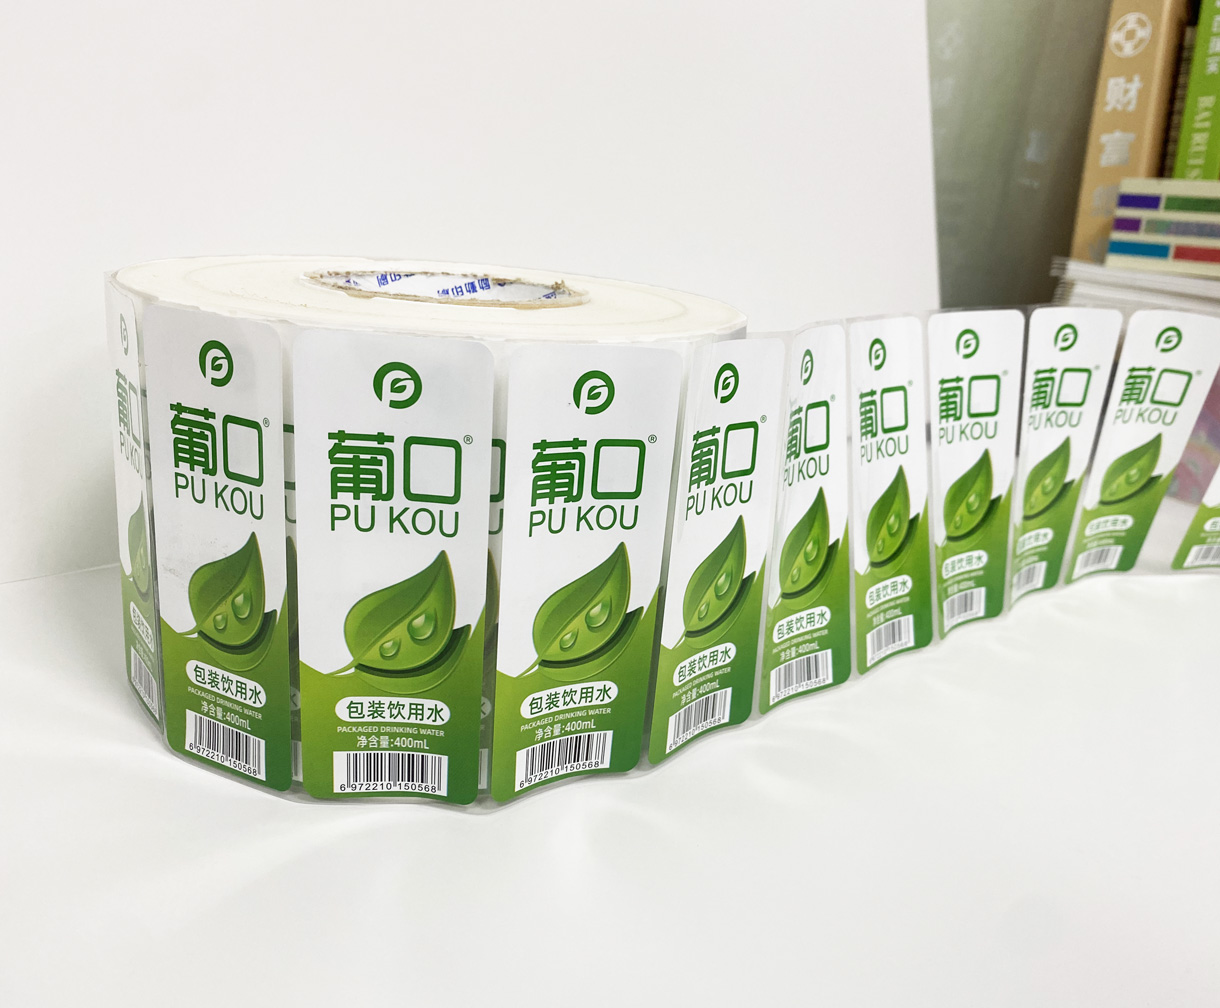 广东金佳远印刷有限公司将亮相CIPPME上海包装展